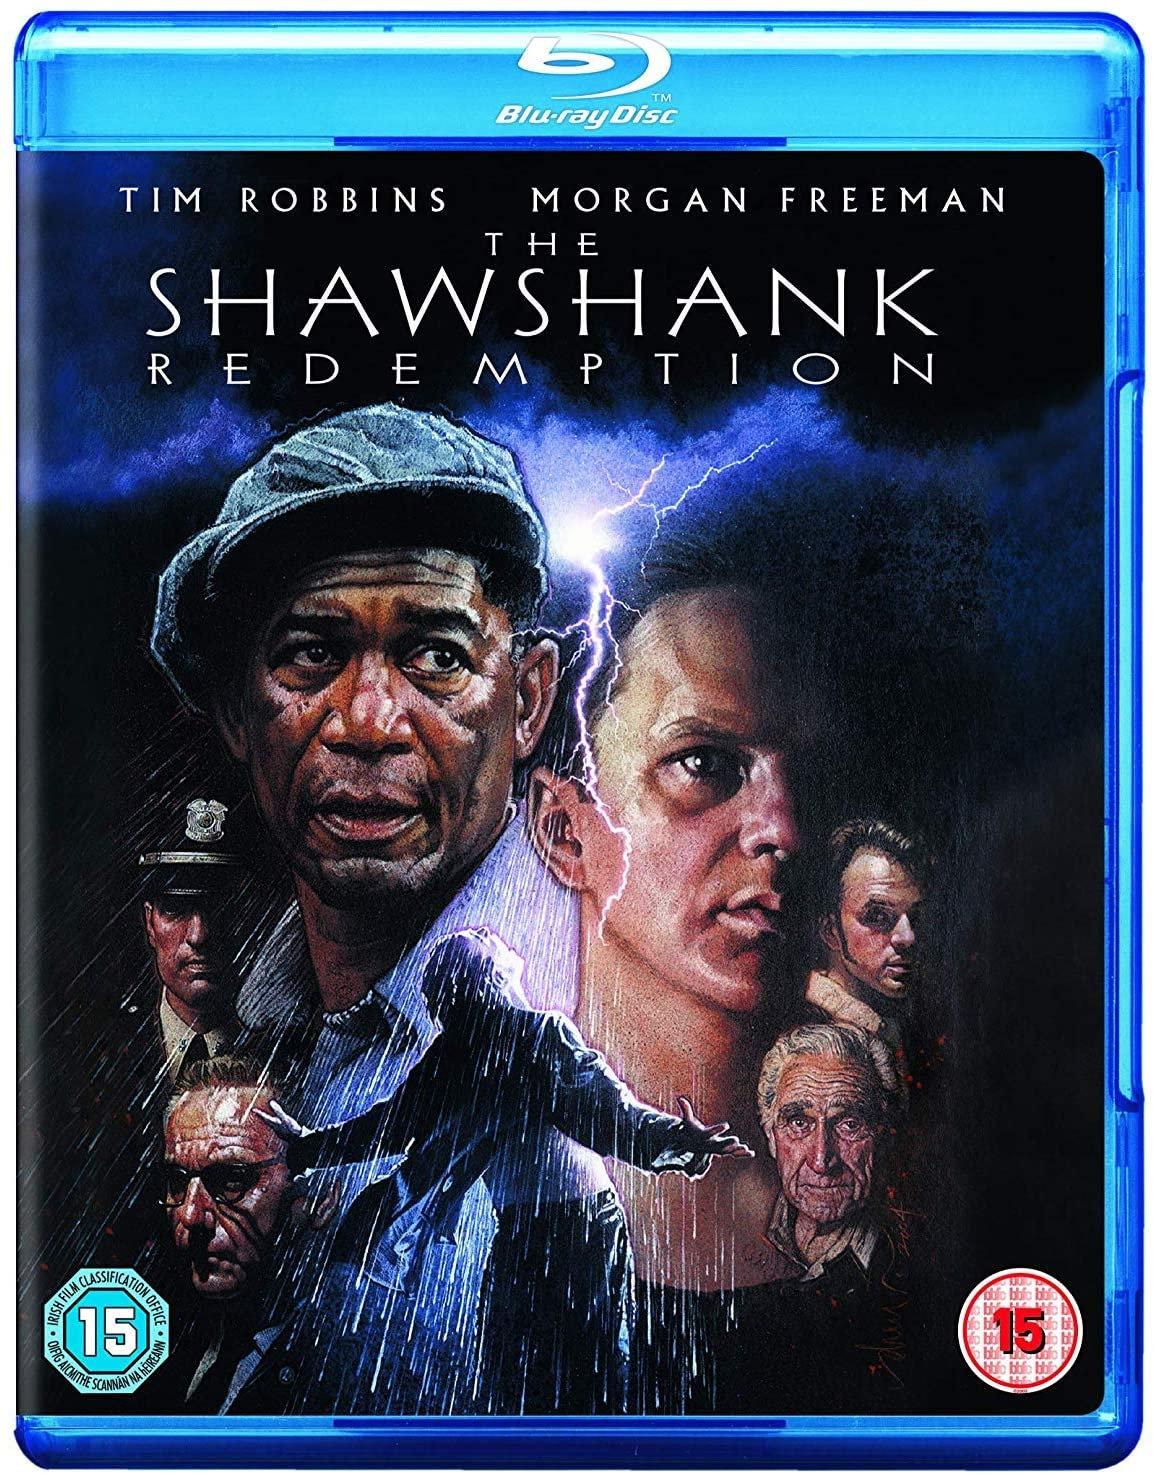 Shawshank redemption blu-ray 01